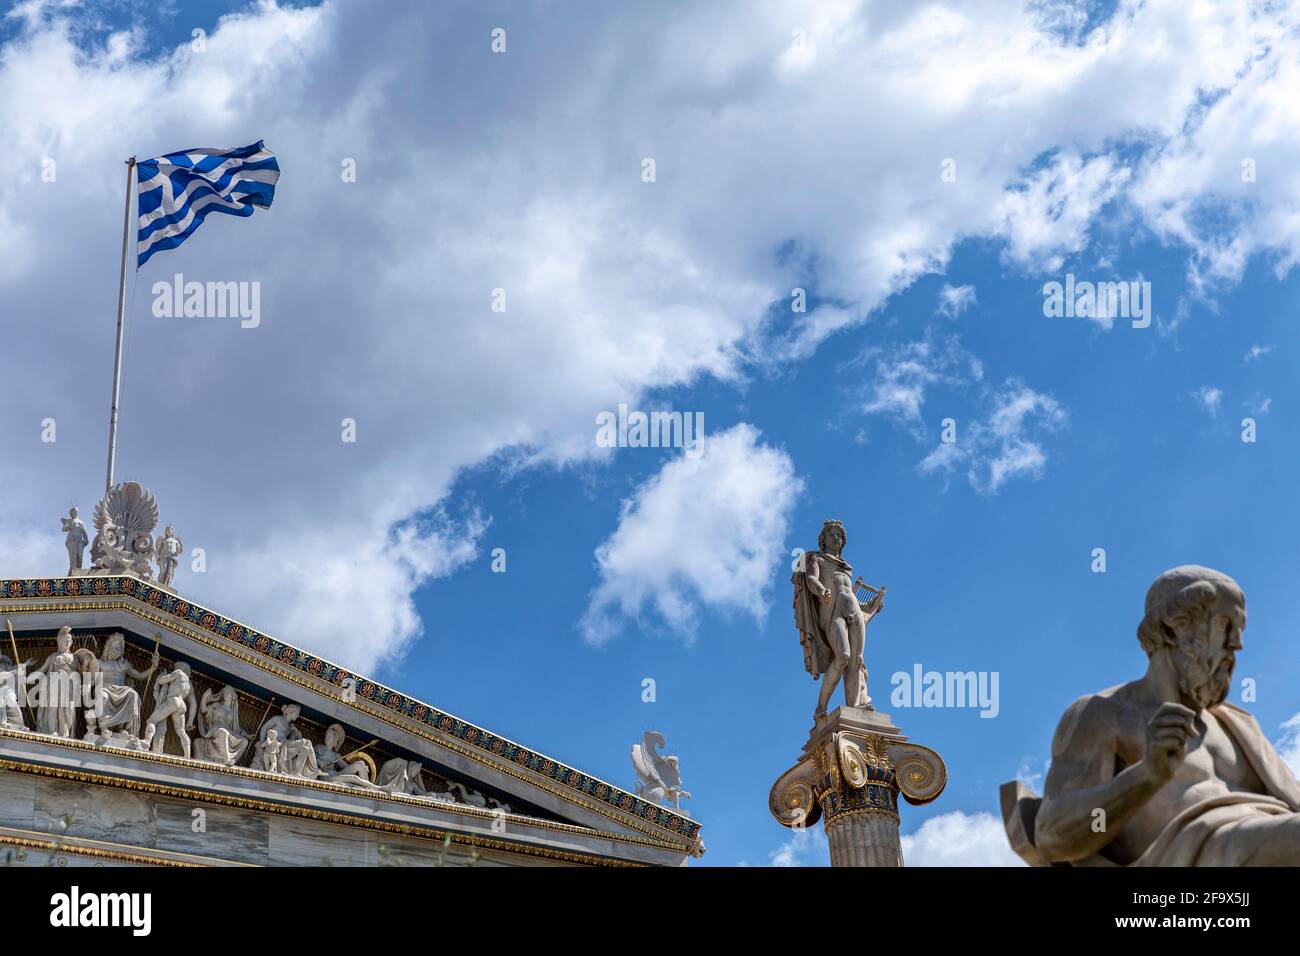 La Academia de Atenas con las estatuas de Apolo el guitarrista y Sócrates (R). Foto de stock